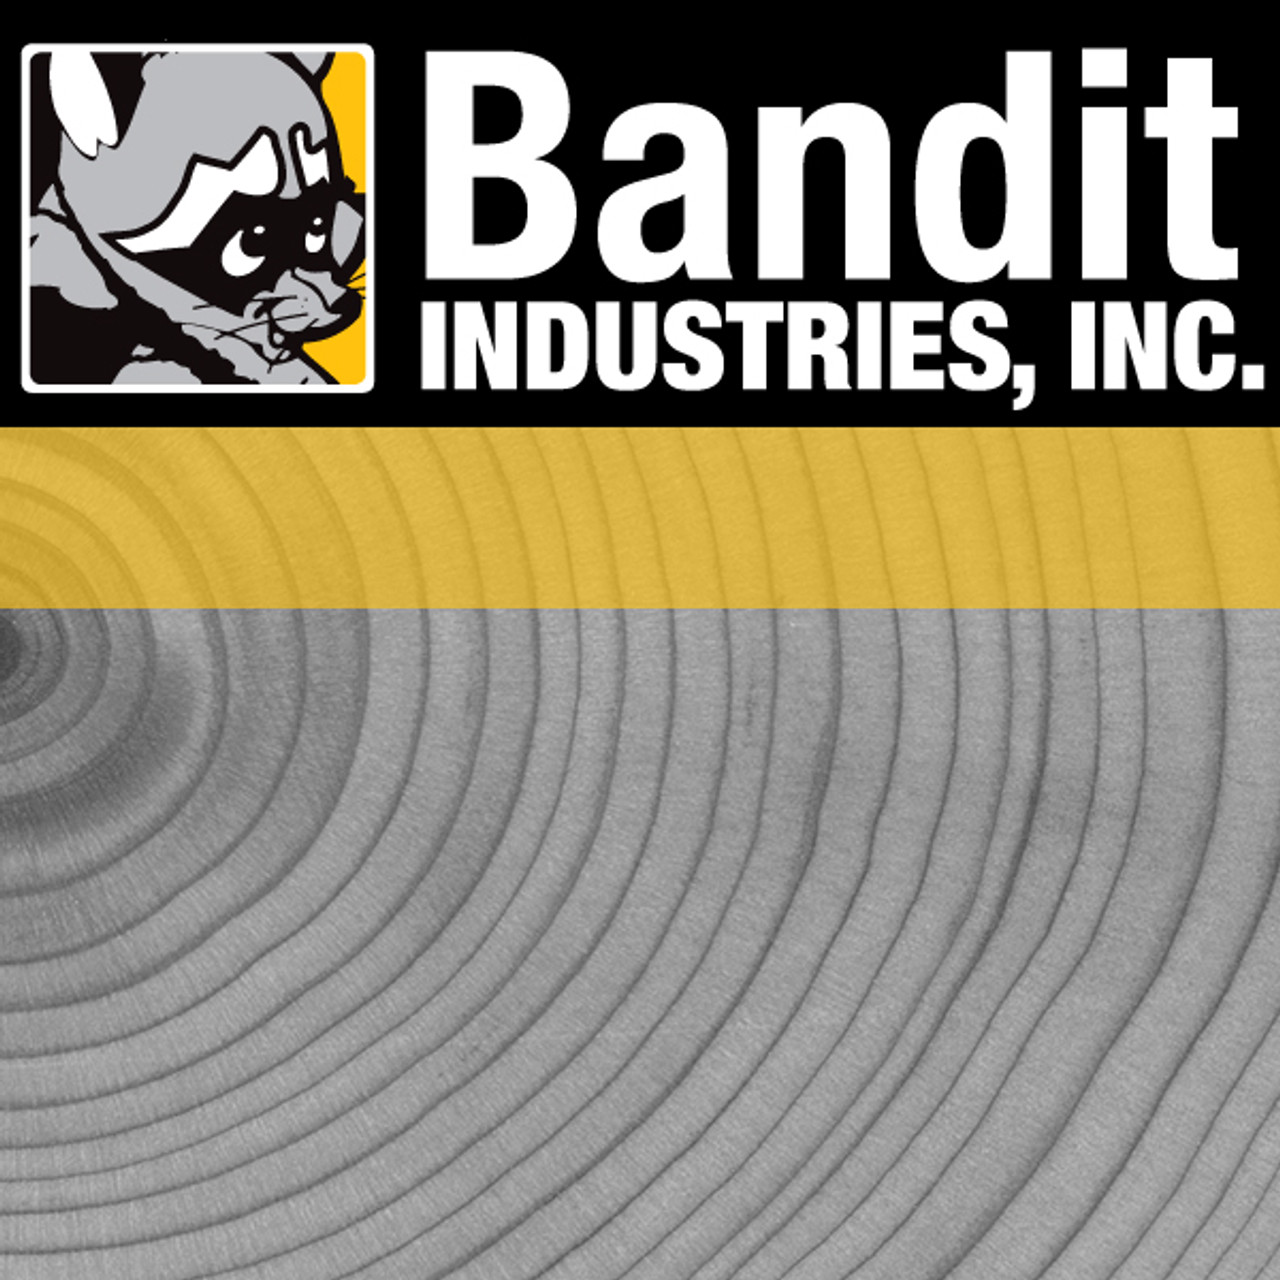 900-3985-06: BANDIT WINCHLINE,AMSTEEL 5/16"" X 200' W/12"" LOOP(BARTLETT)